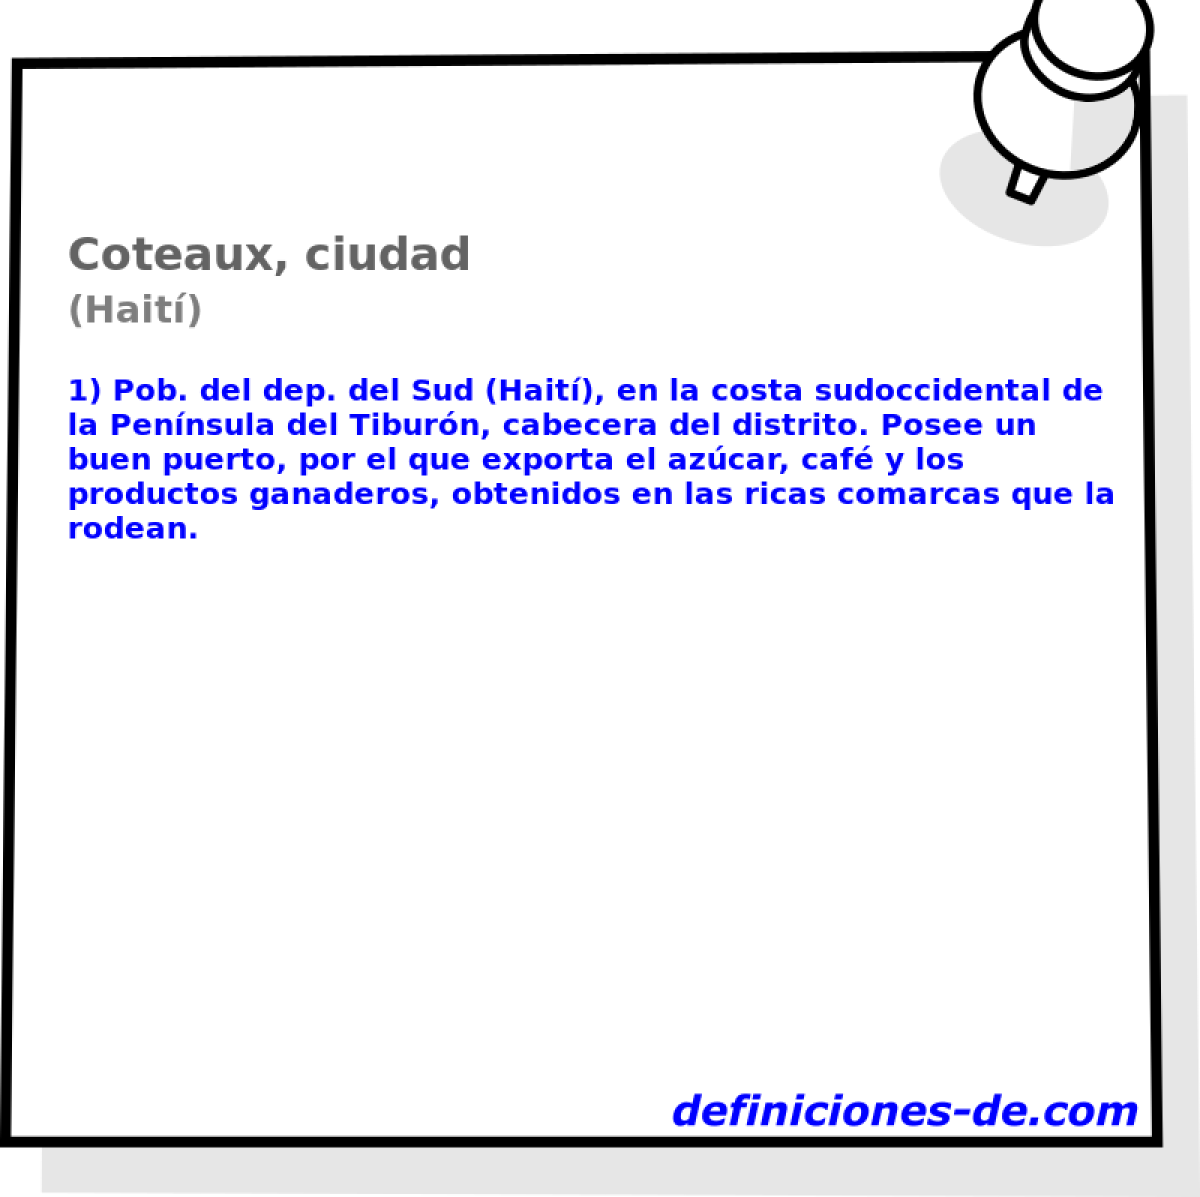 Coteaux, ciudad (Hait)